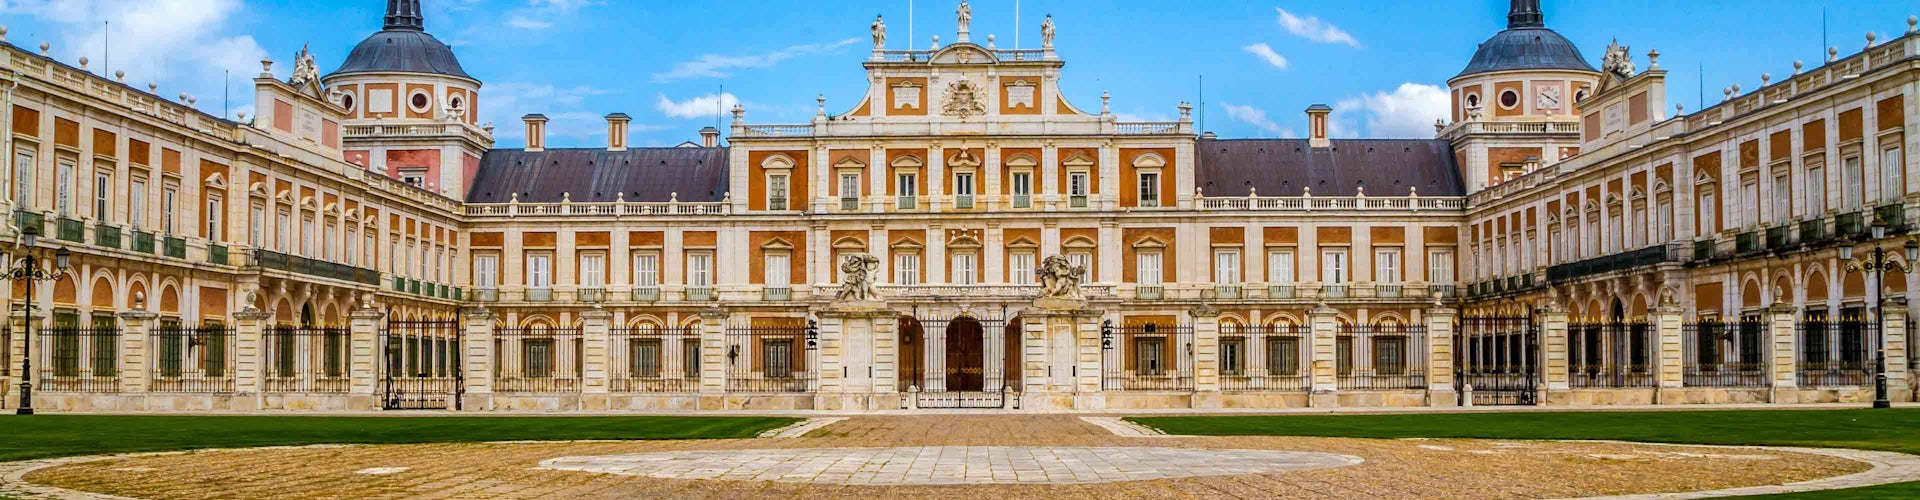 palacio aranjuez excursion